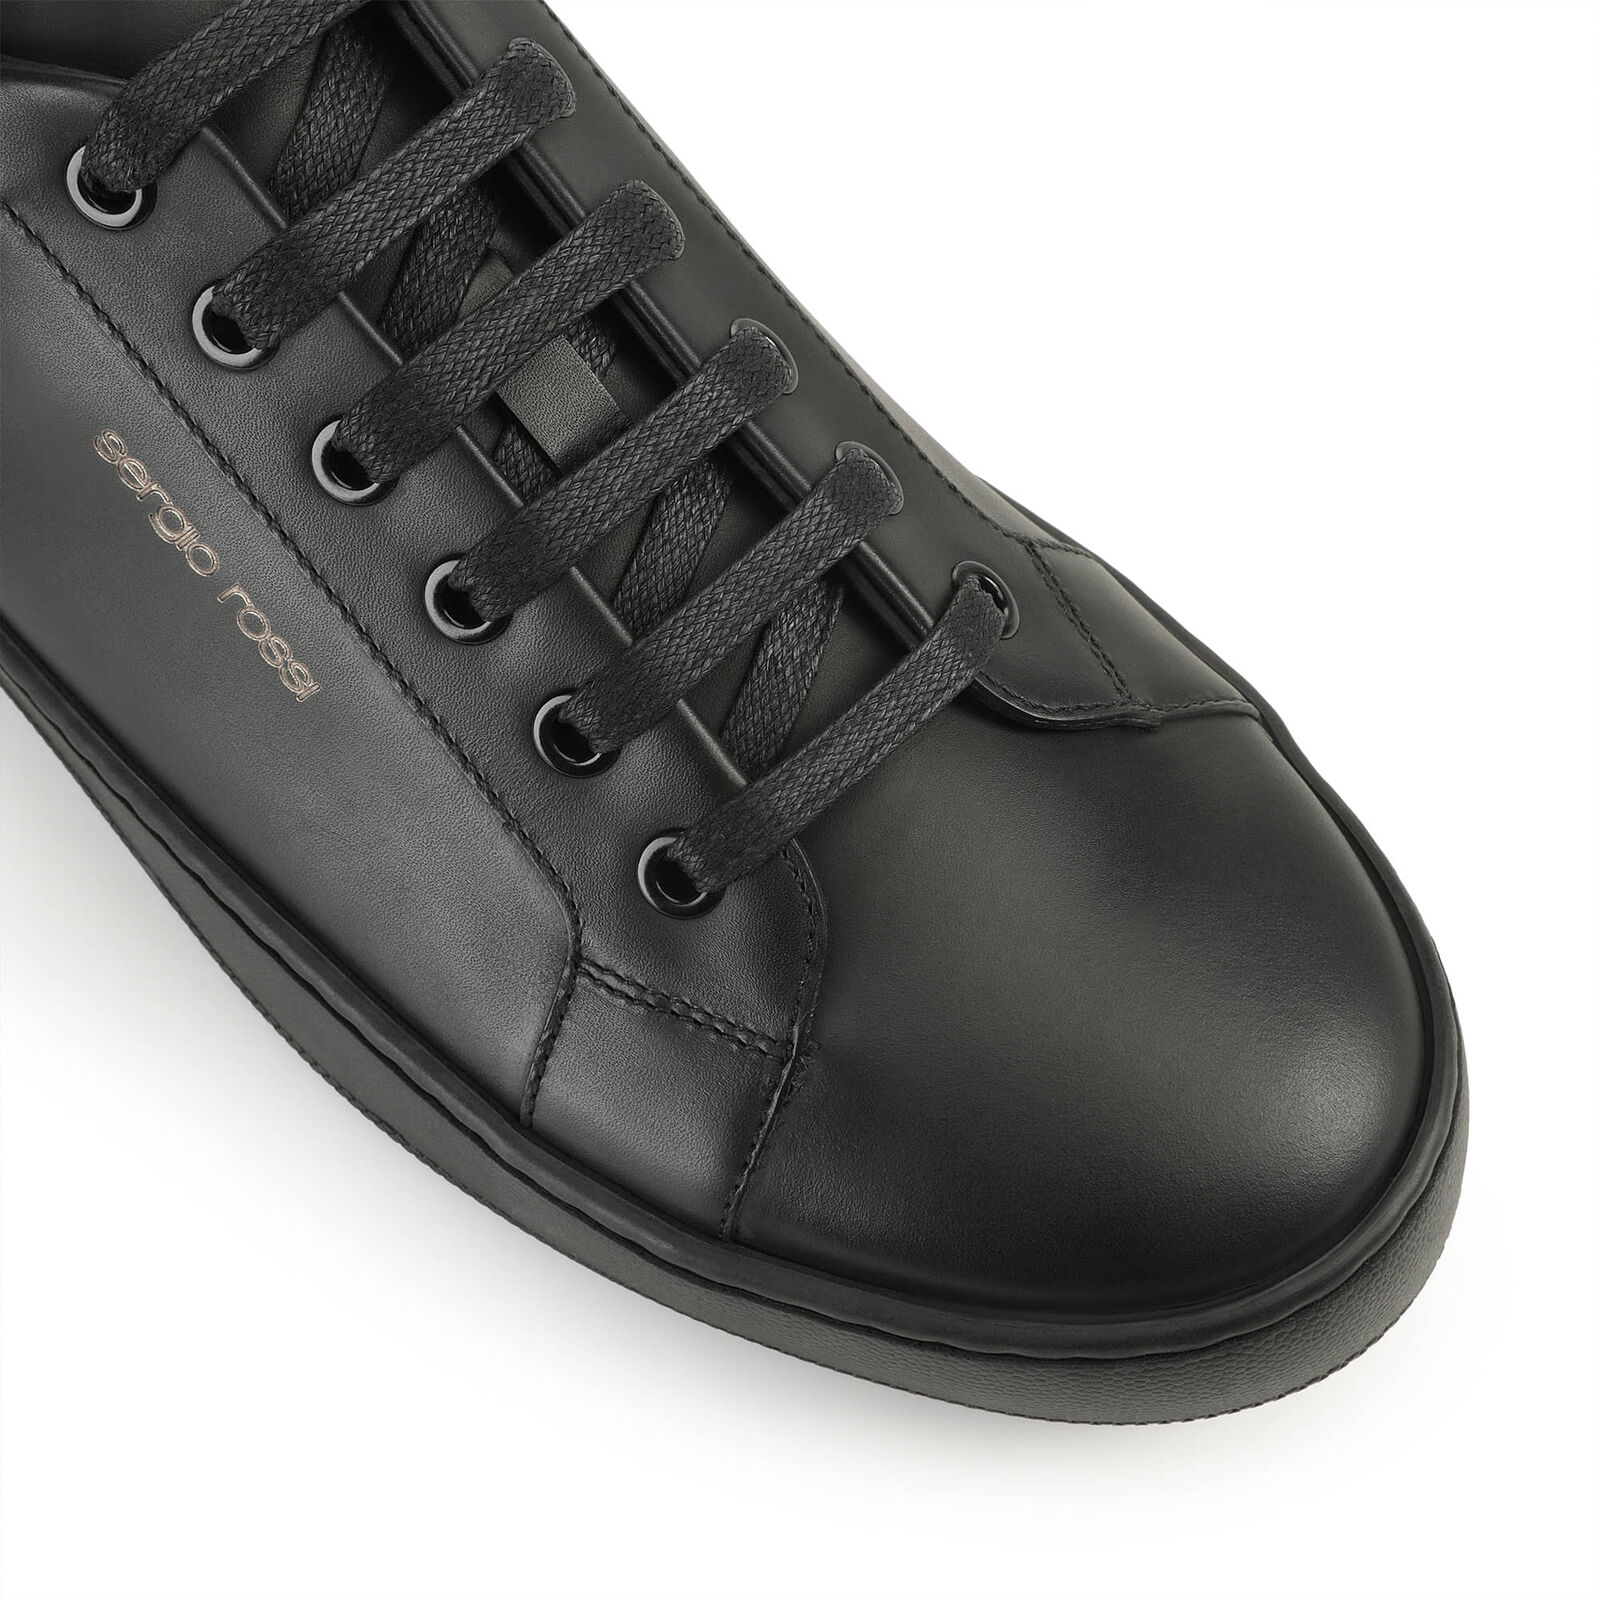 sr Addict Signature - Sneakers Black, 4